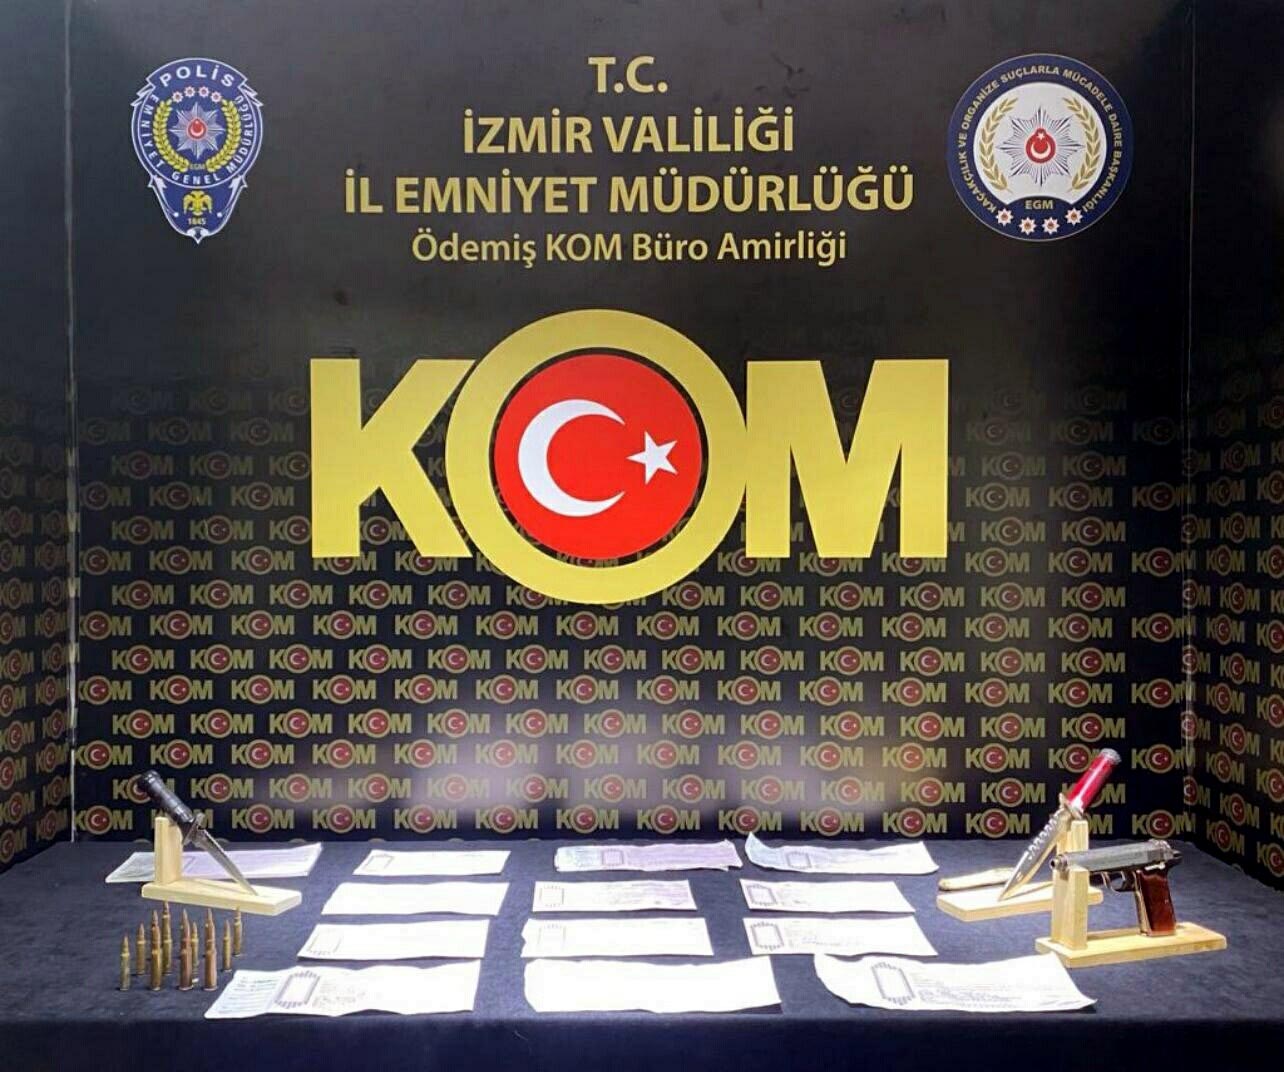 İzmir’de tefecilik faaliyetlerine yönelik operasyon düzenlendi. Operasyon kapsamında 4 ilçede yapılan çalışmalarda 7 kişi gözaltına alındı.